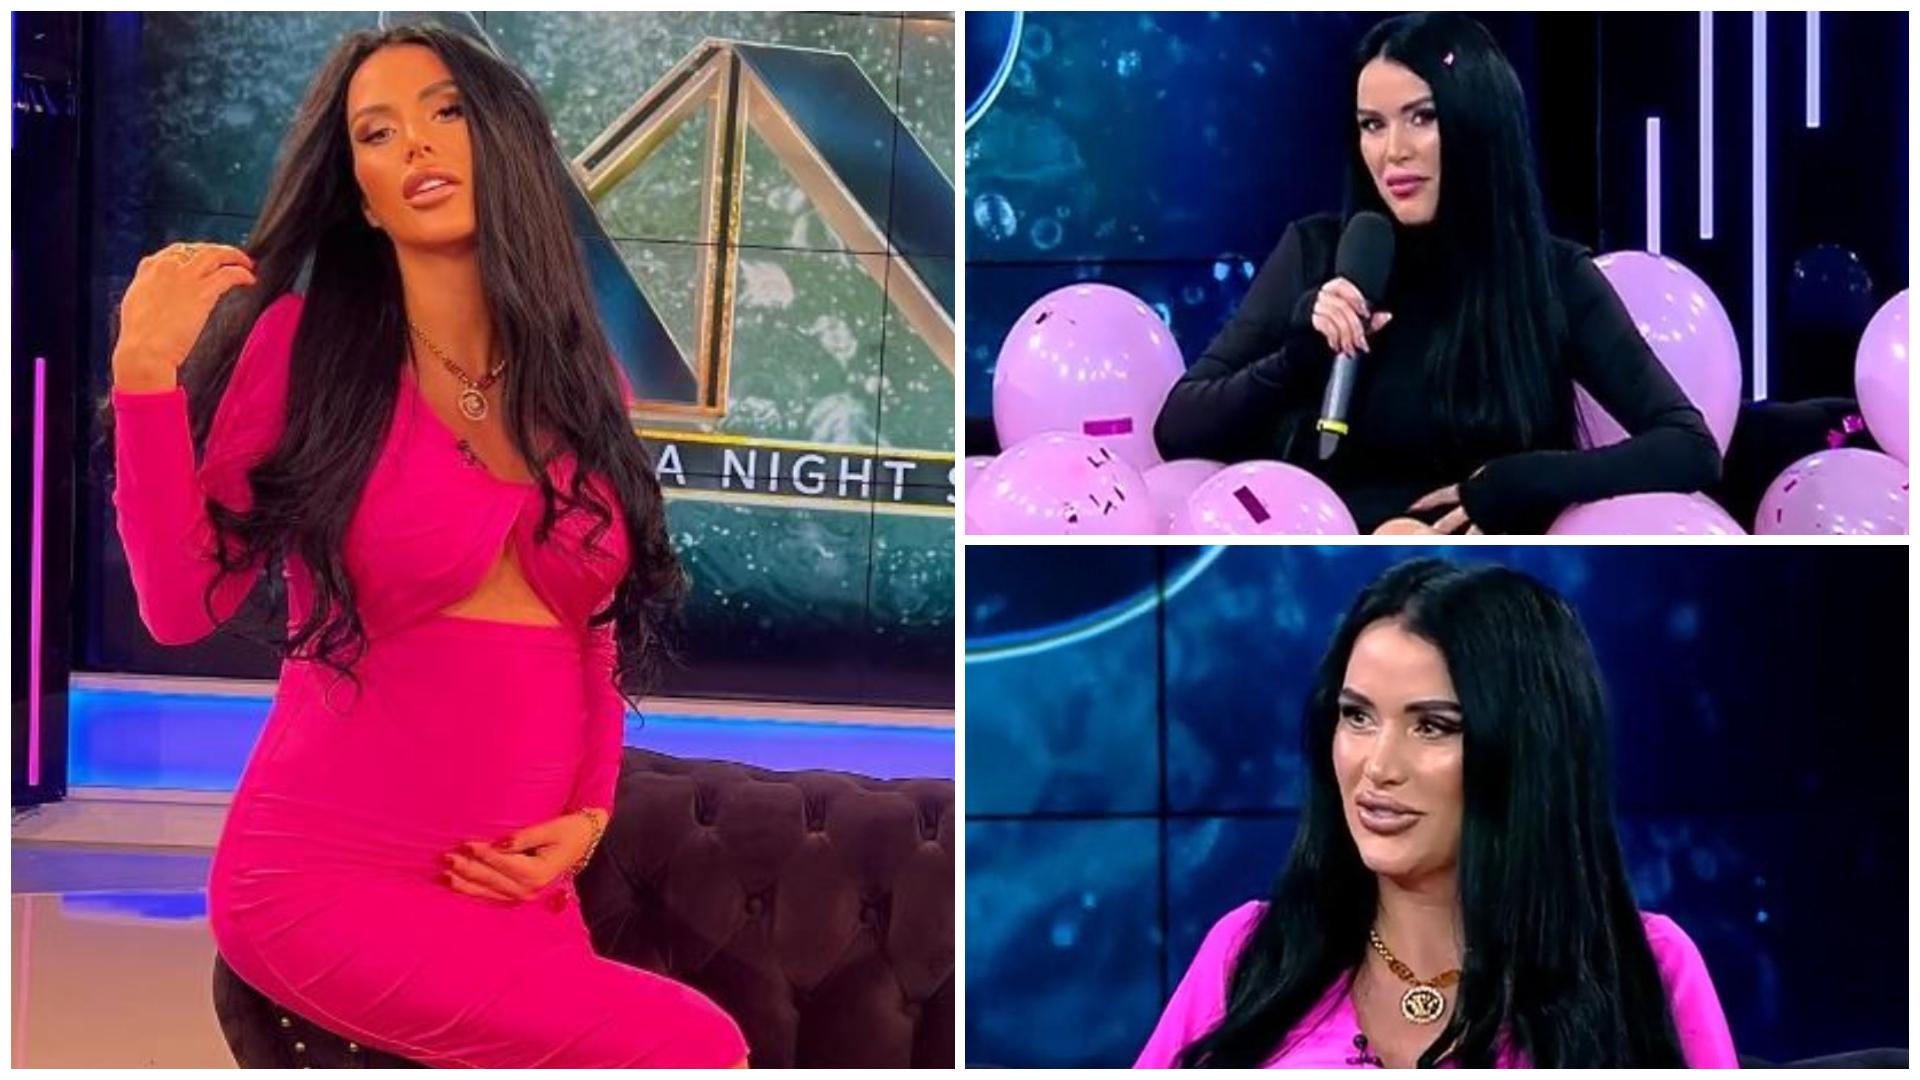 Colaj cu Daniela Crudu în trei ipostaze diferite la Xtra Night Show pe canapea, cu burtica de gravidă